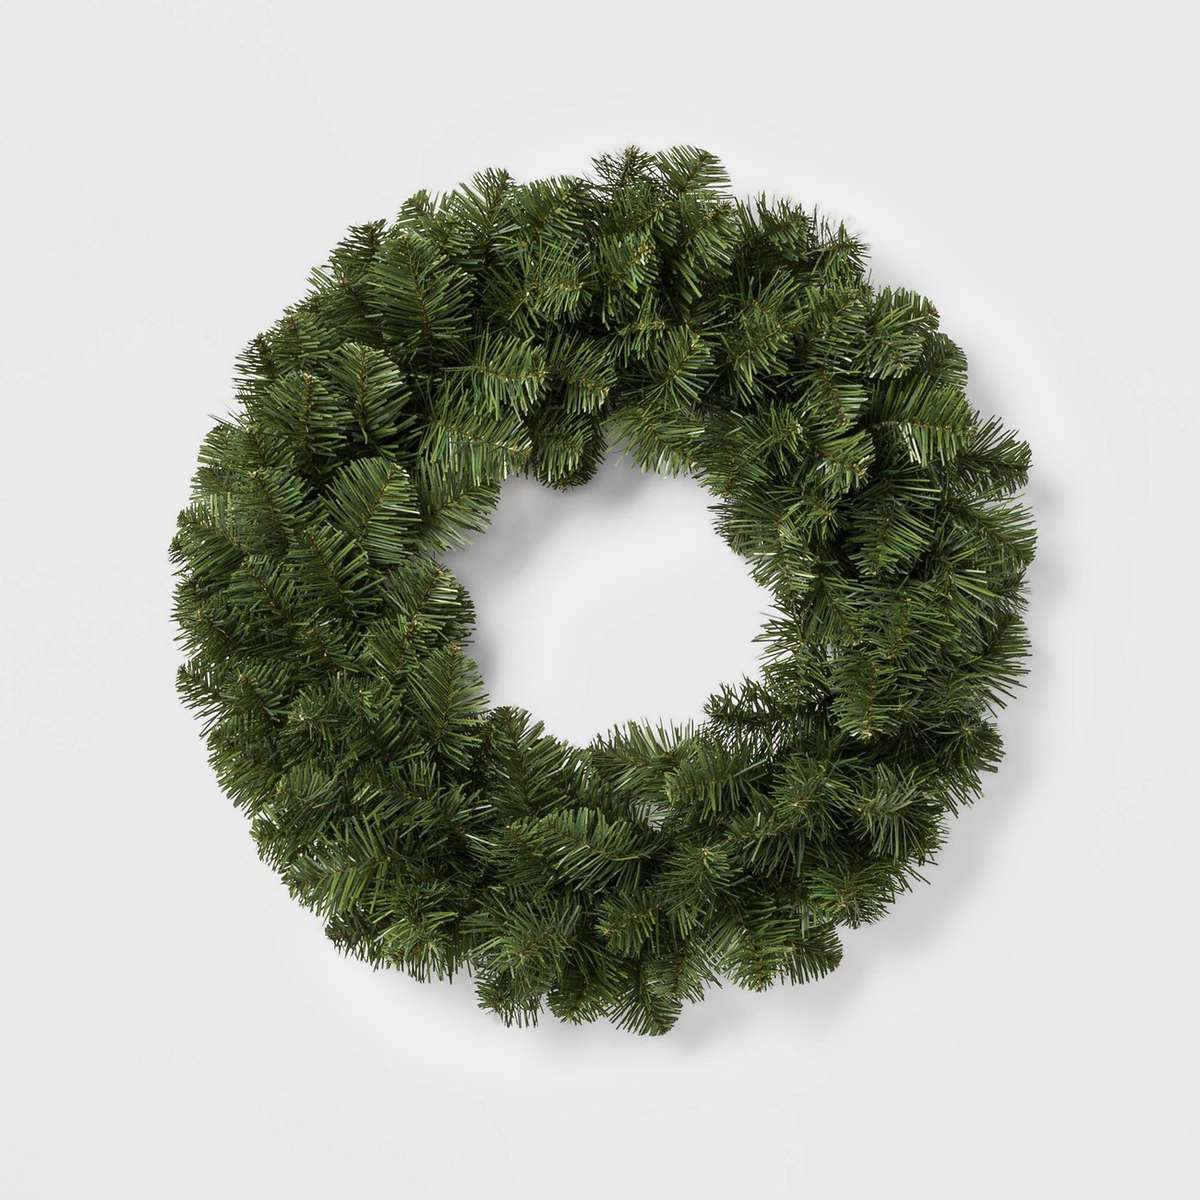 Wondershop 22in Christmas Artificial Pine Wreath